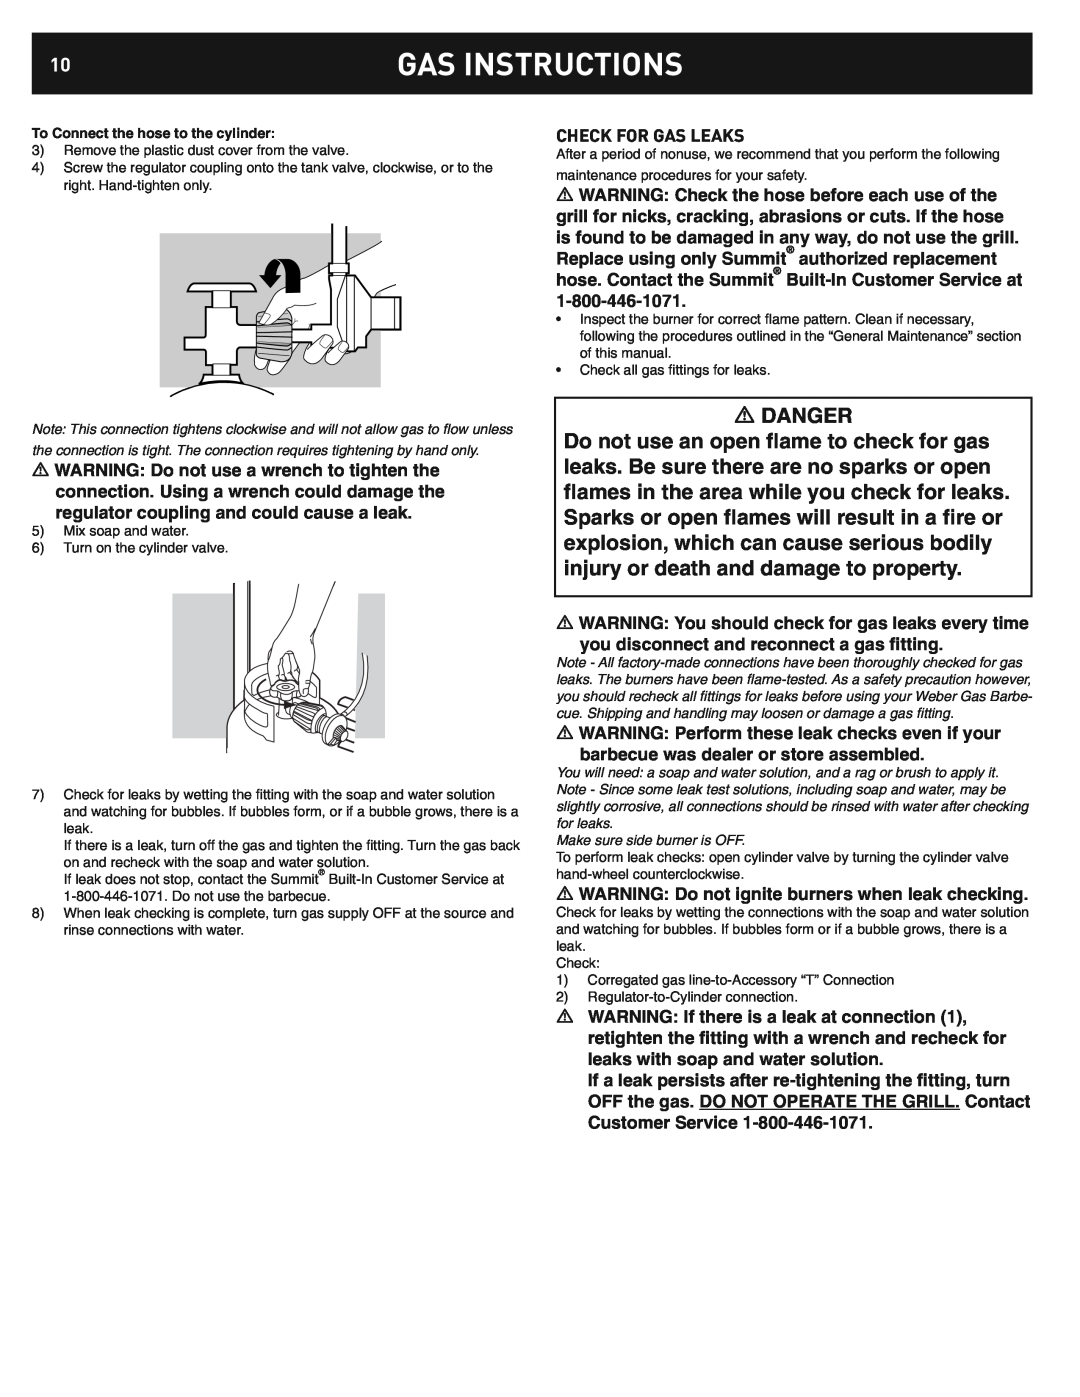 Weber 42376, Built In LP Side Burner manual Check For Gas Leaks, Gas Instructions, Danger 